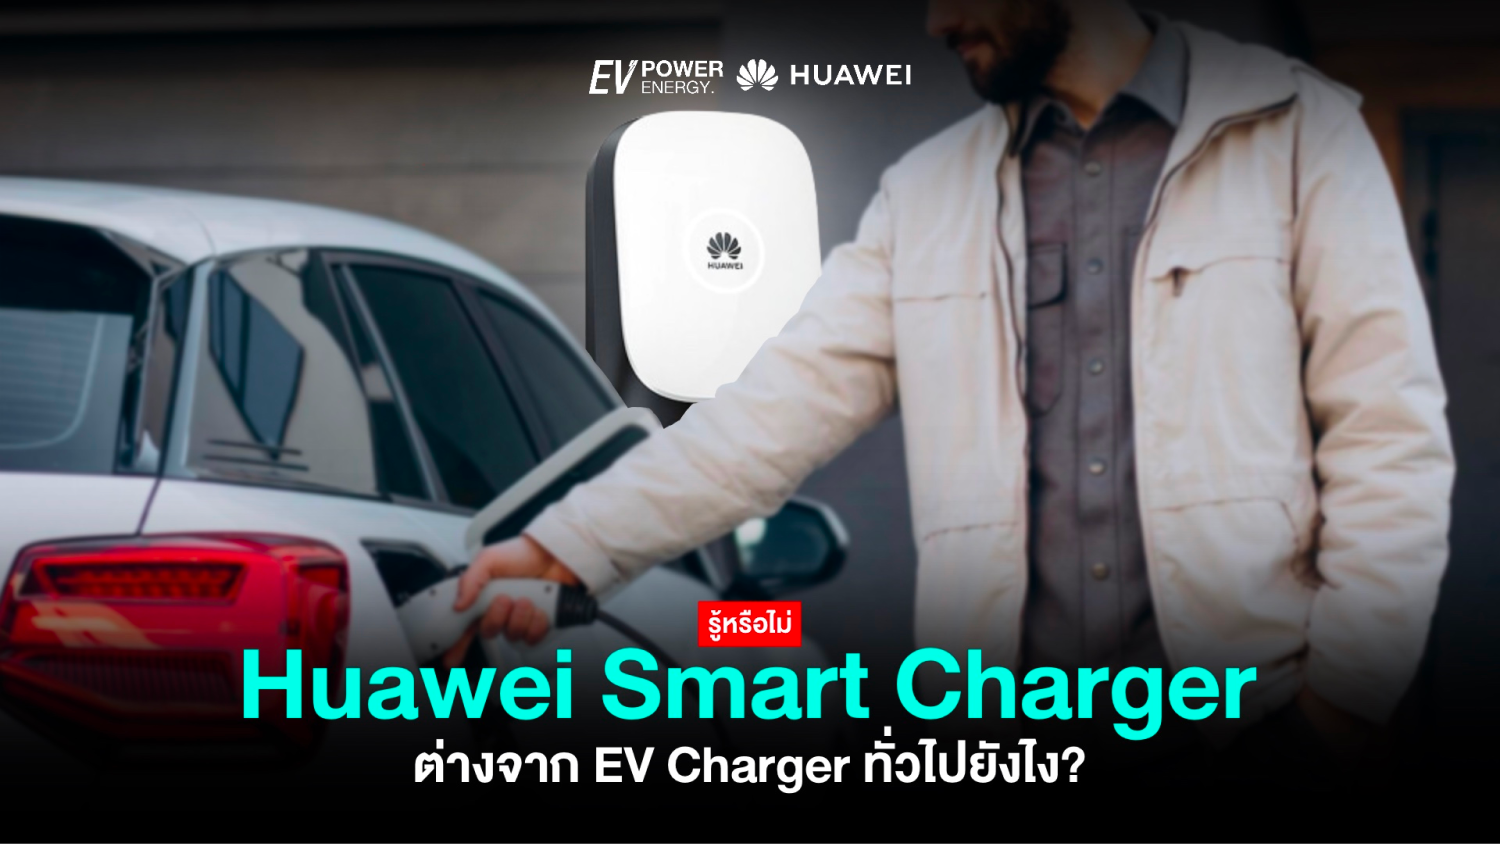 EV Charger ทั่วไป กับ Huawei Smart Charger ต่างกันยังไง